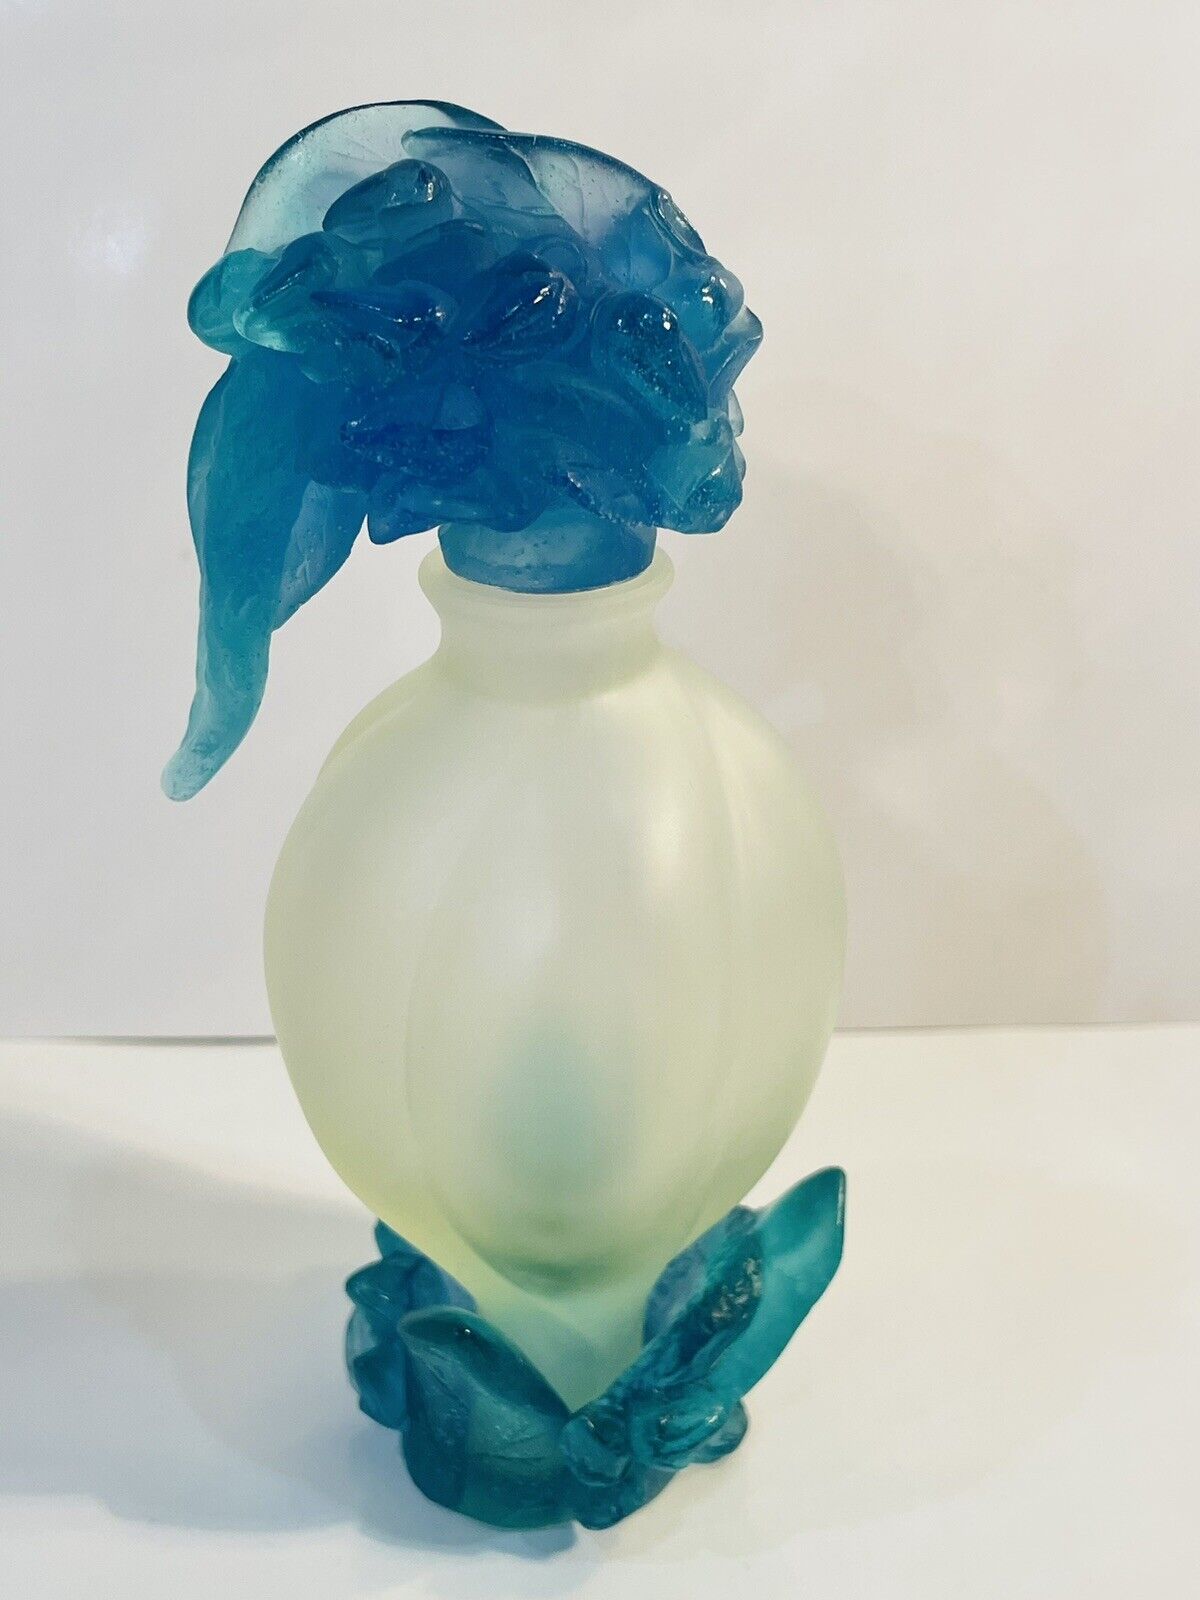 Gorgeous Daum Teal Blue Pate De Verre Perfume Bottle 6.25” Perfect